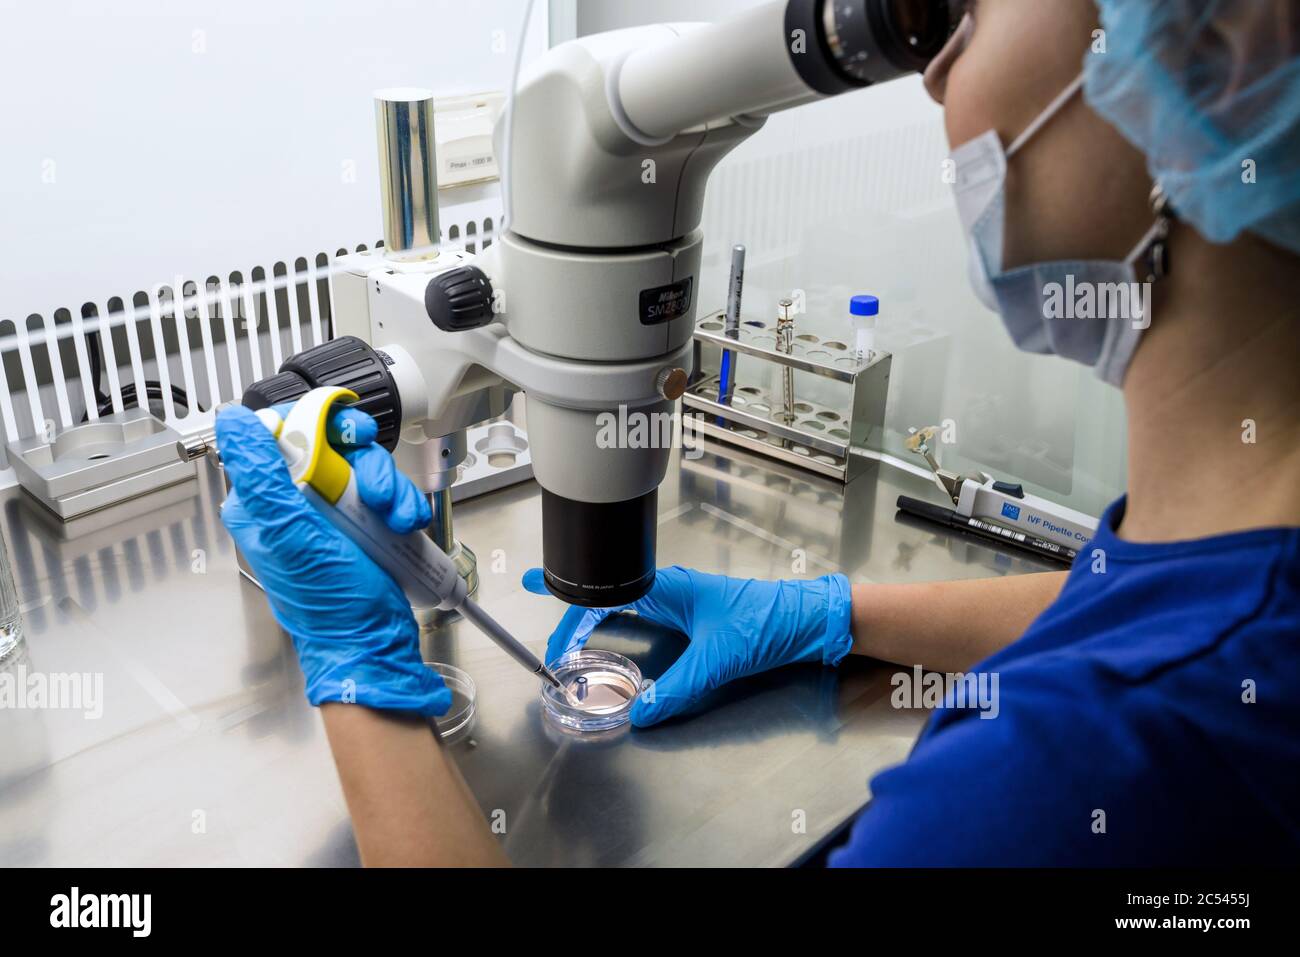 MOSKAU - 14. DEZEMBER 2016: Forscherin mit einem Mikroskop in einem Labor Stockfoto